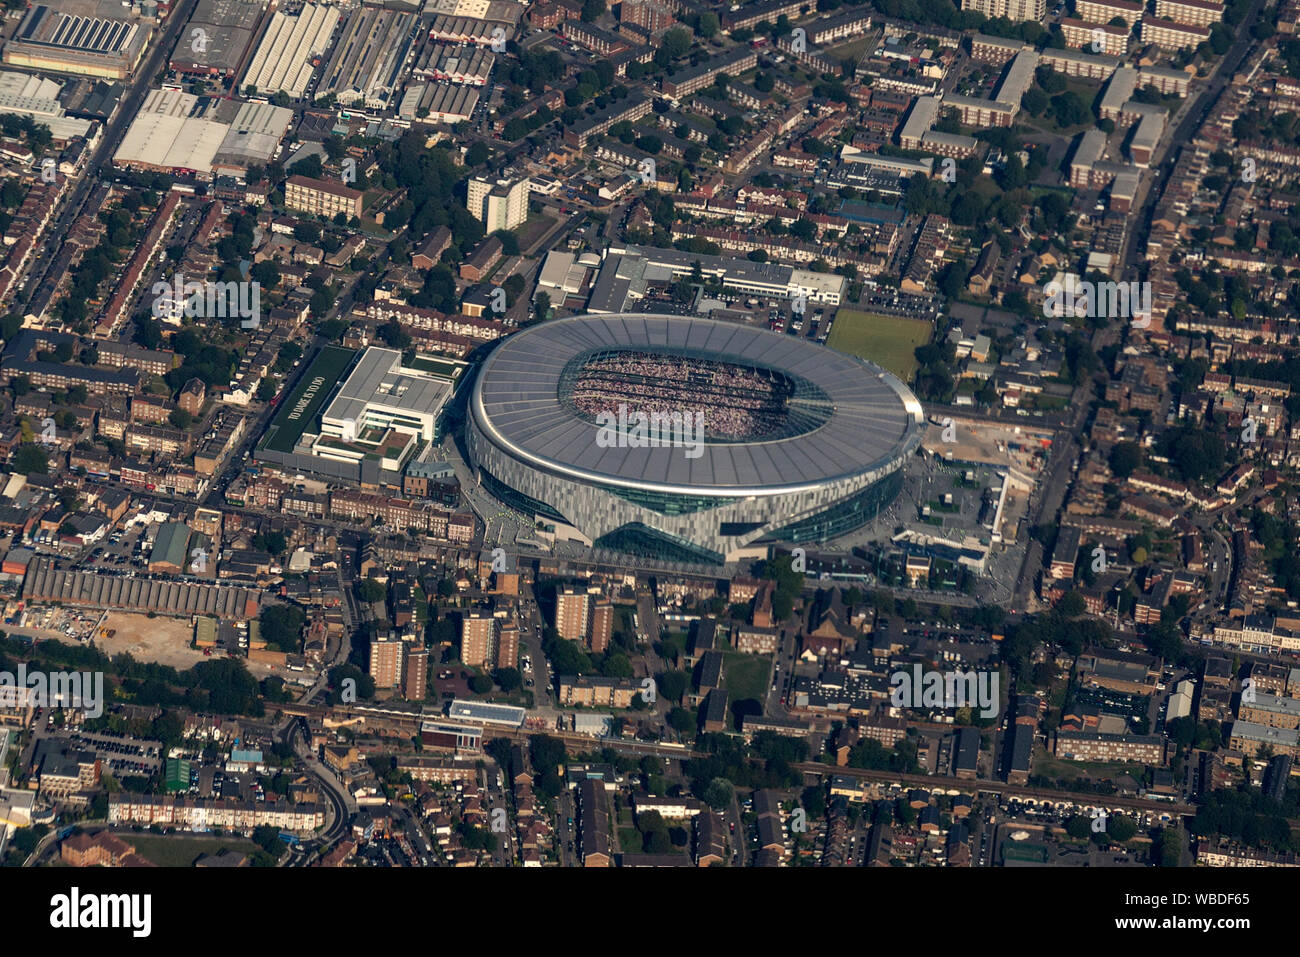 Vista aérea del estadio de Tottenham Hotspur Football Club en el norte de Londres, Inglaterra. Foto de stock